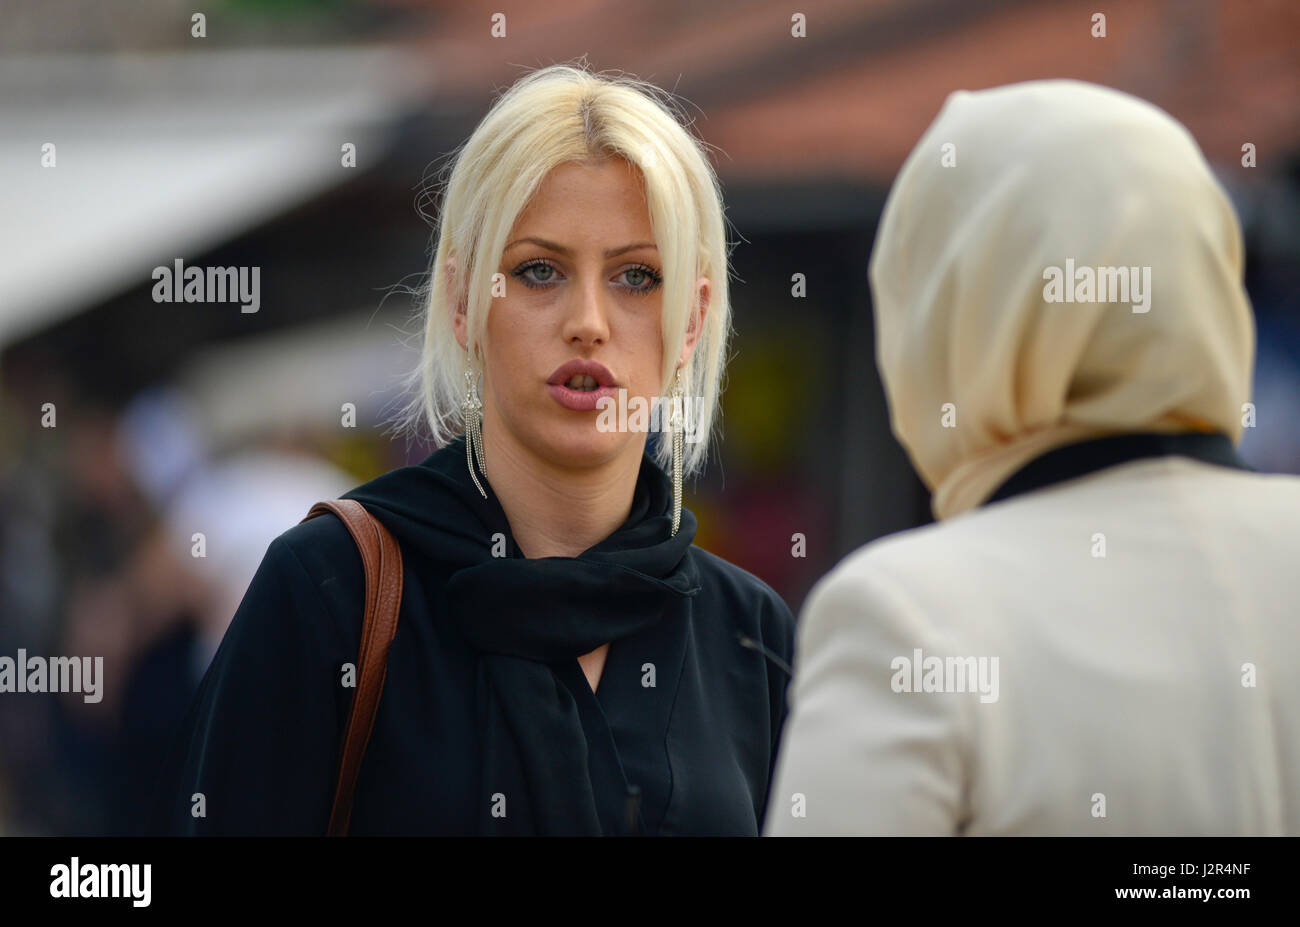 Ein blondes Mädchen im Gespräch mit ihren muslimischen Freund Stockfoto